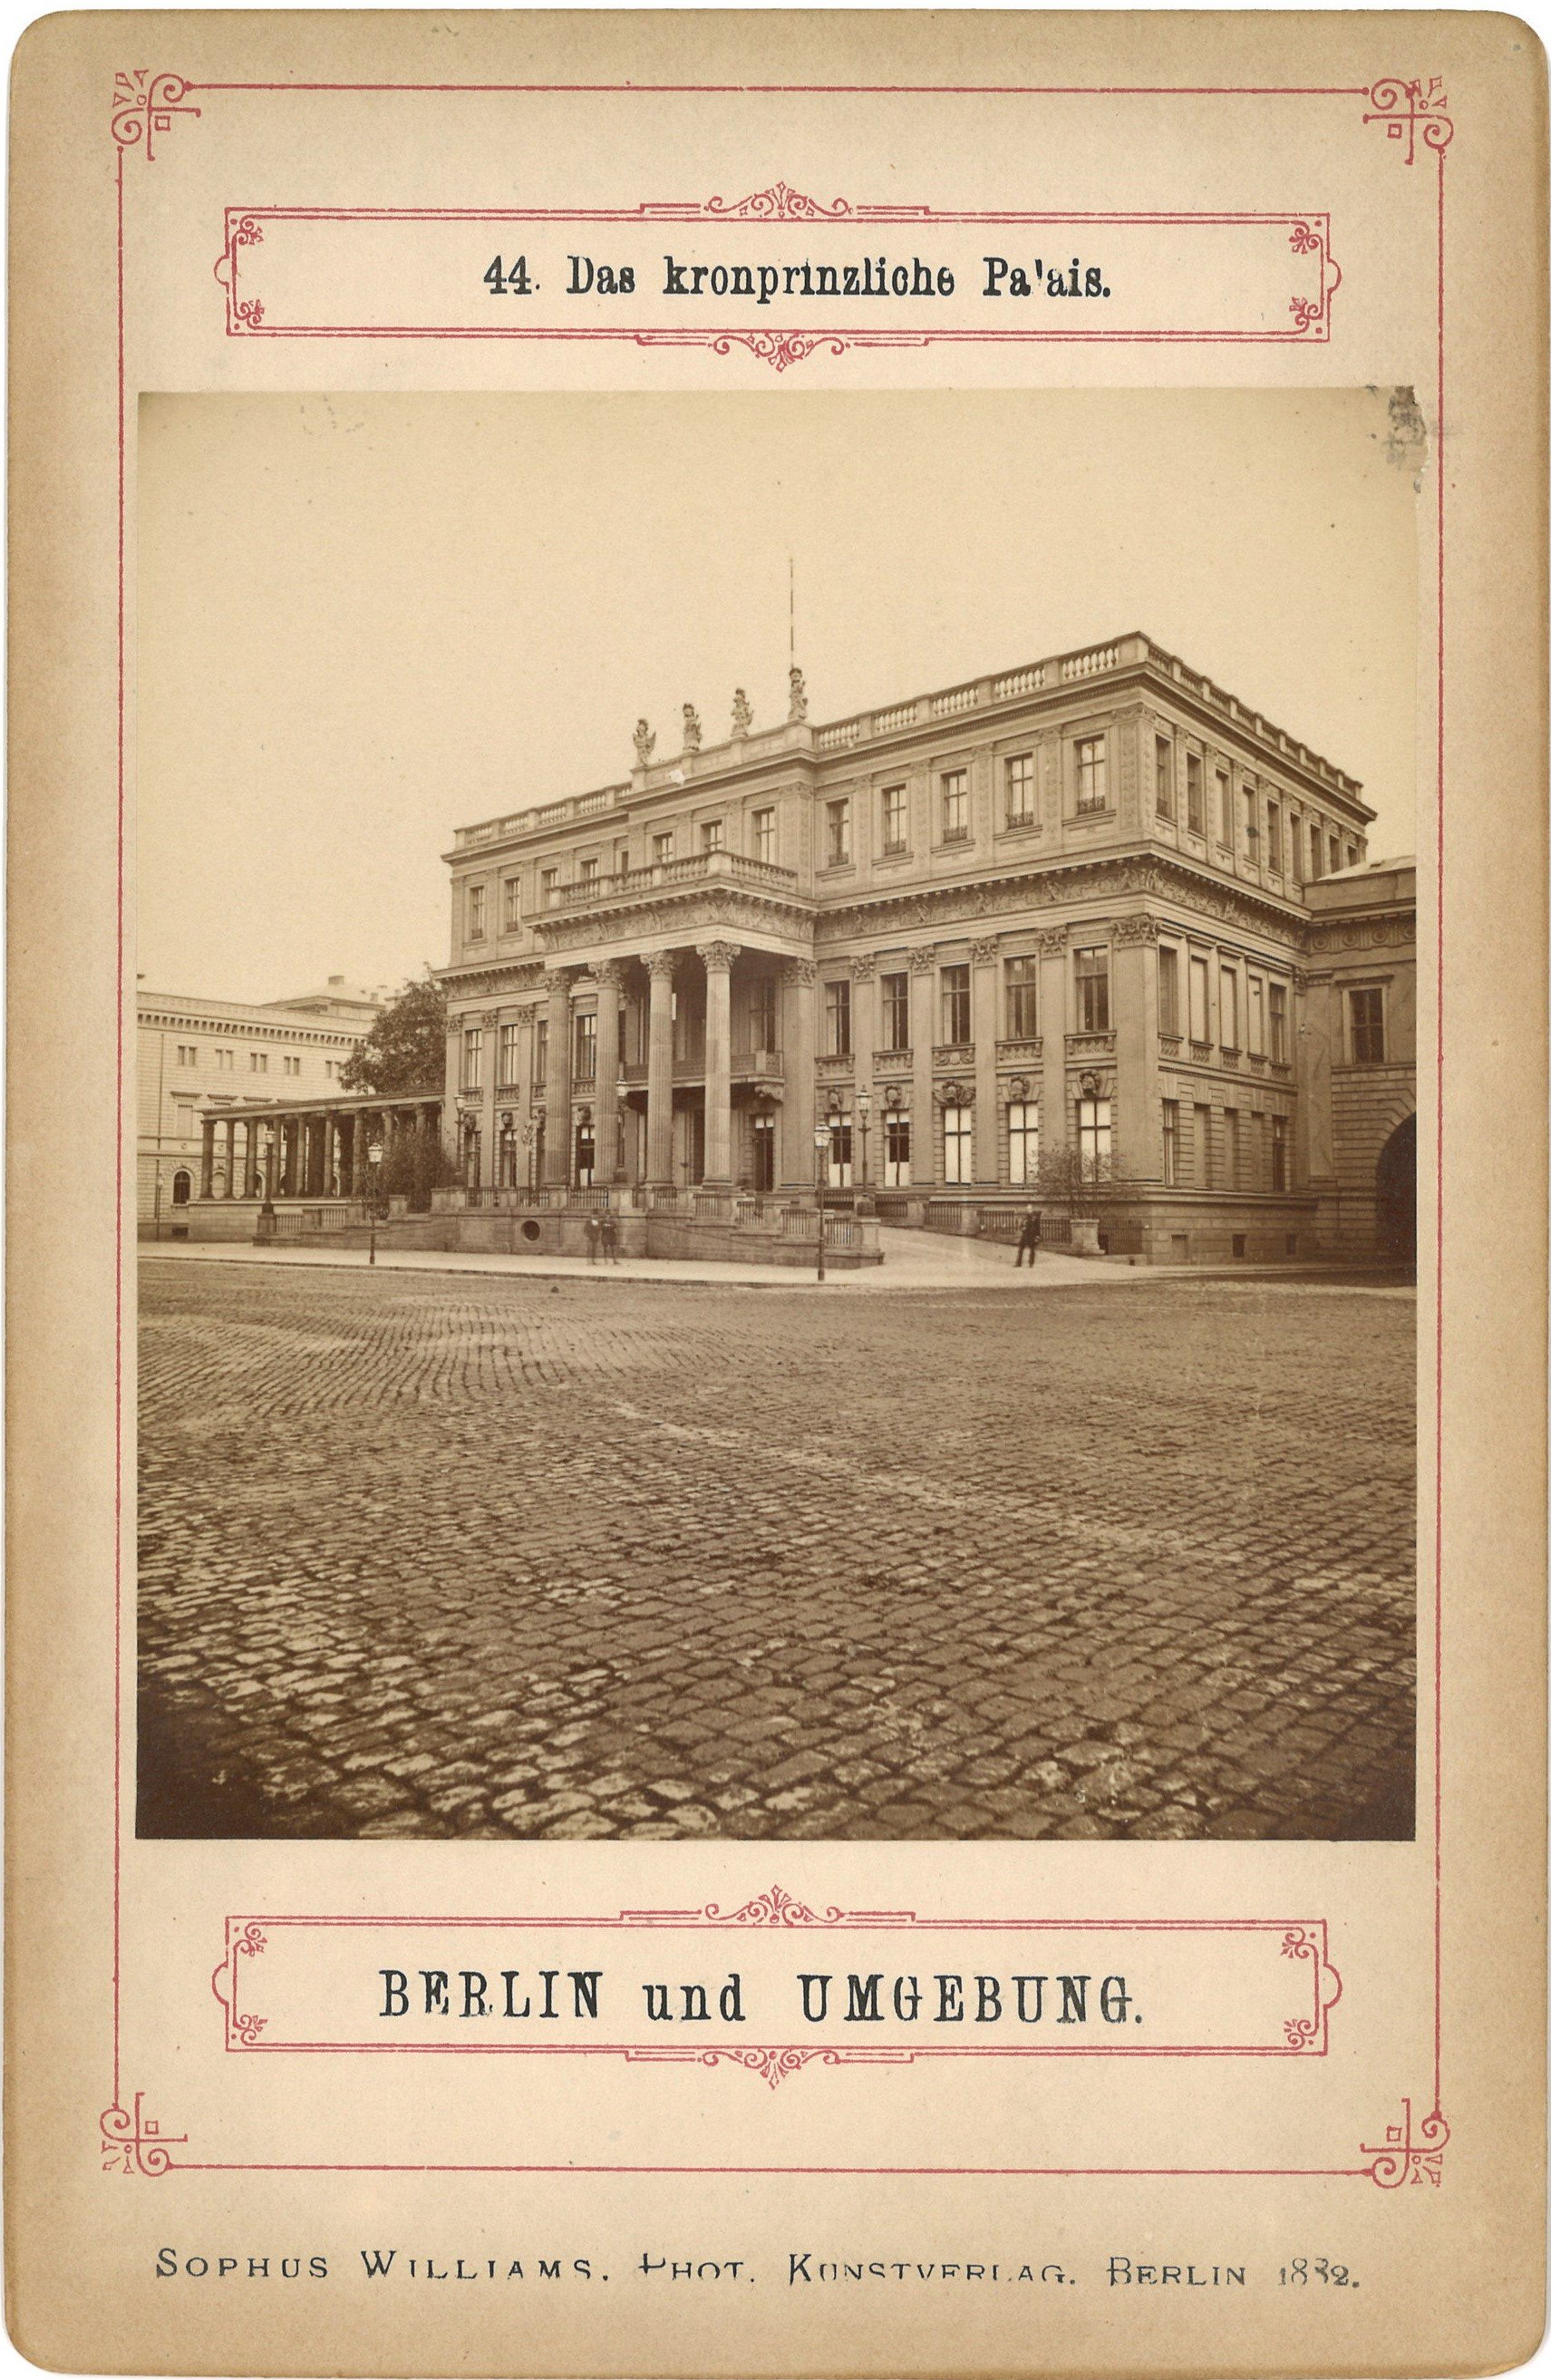 Berlin-Mitte: Kronprinzenpalais von Nordwesten (Landesgeschichtliche Vereinigung für die Mark Brandenburg e.V., Archiv CC BY)